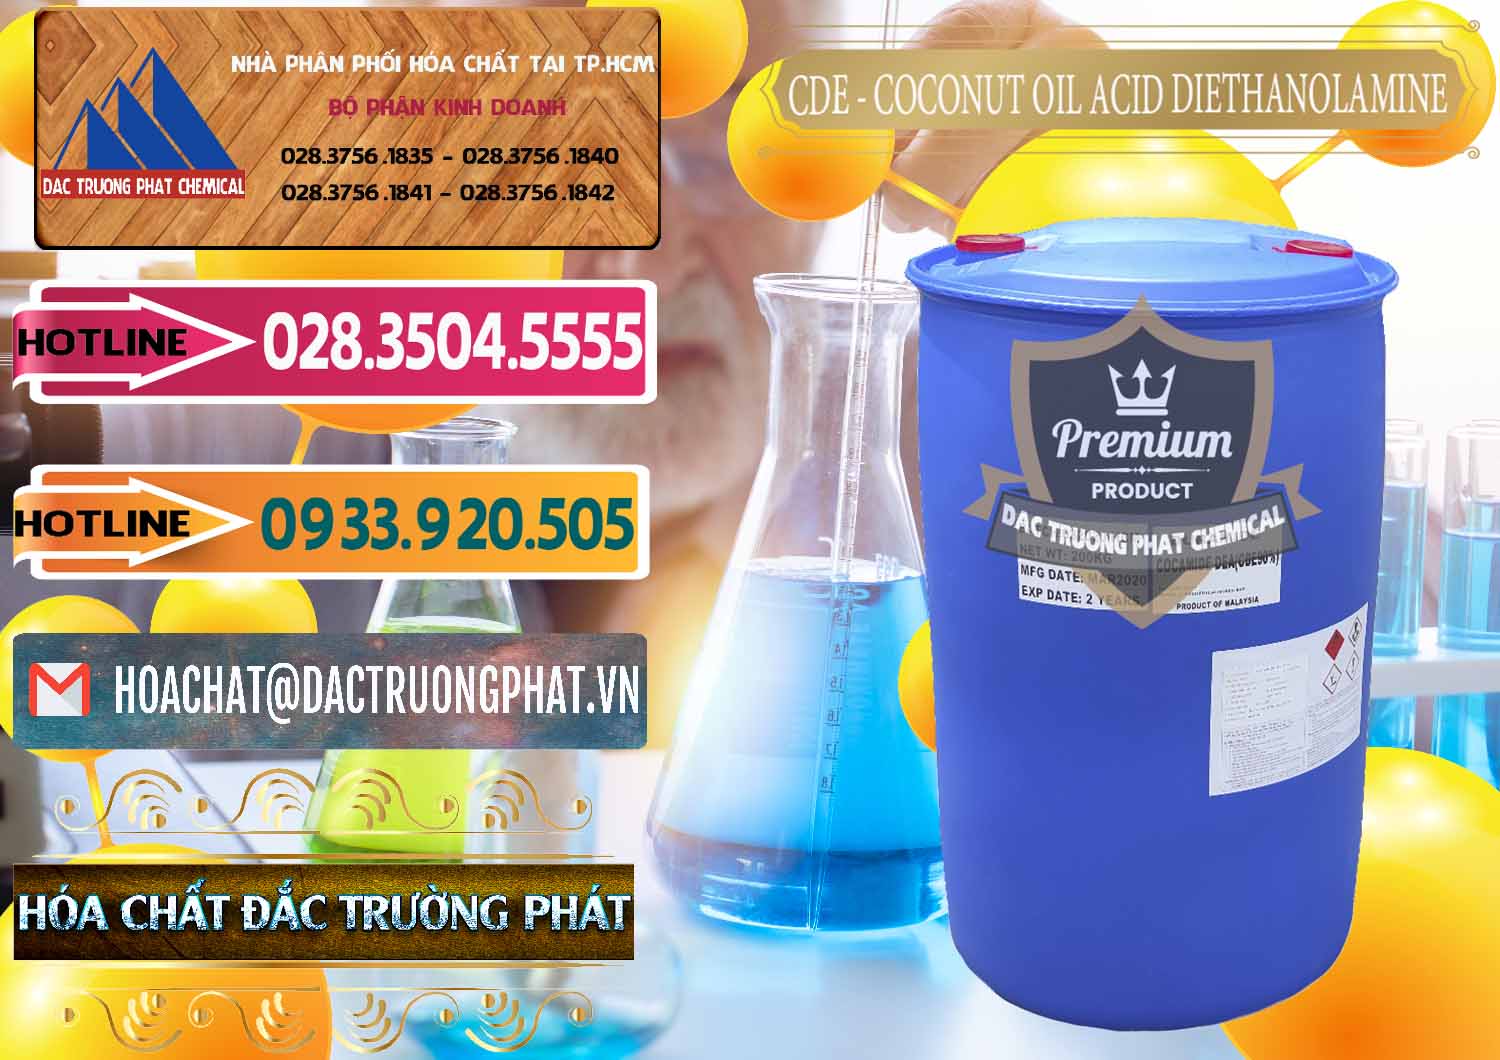 Cty bán - cung ứng CDE - Coconut Oil Acid Diethanolamine Mã Lai Malaysia - 0311 - Nơi chuyên bán và cung cấp hóa chất tại TP.HCM - dactruongphat.vn